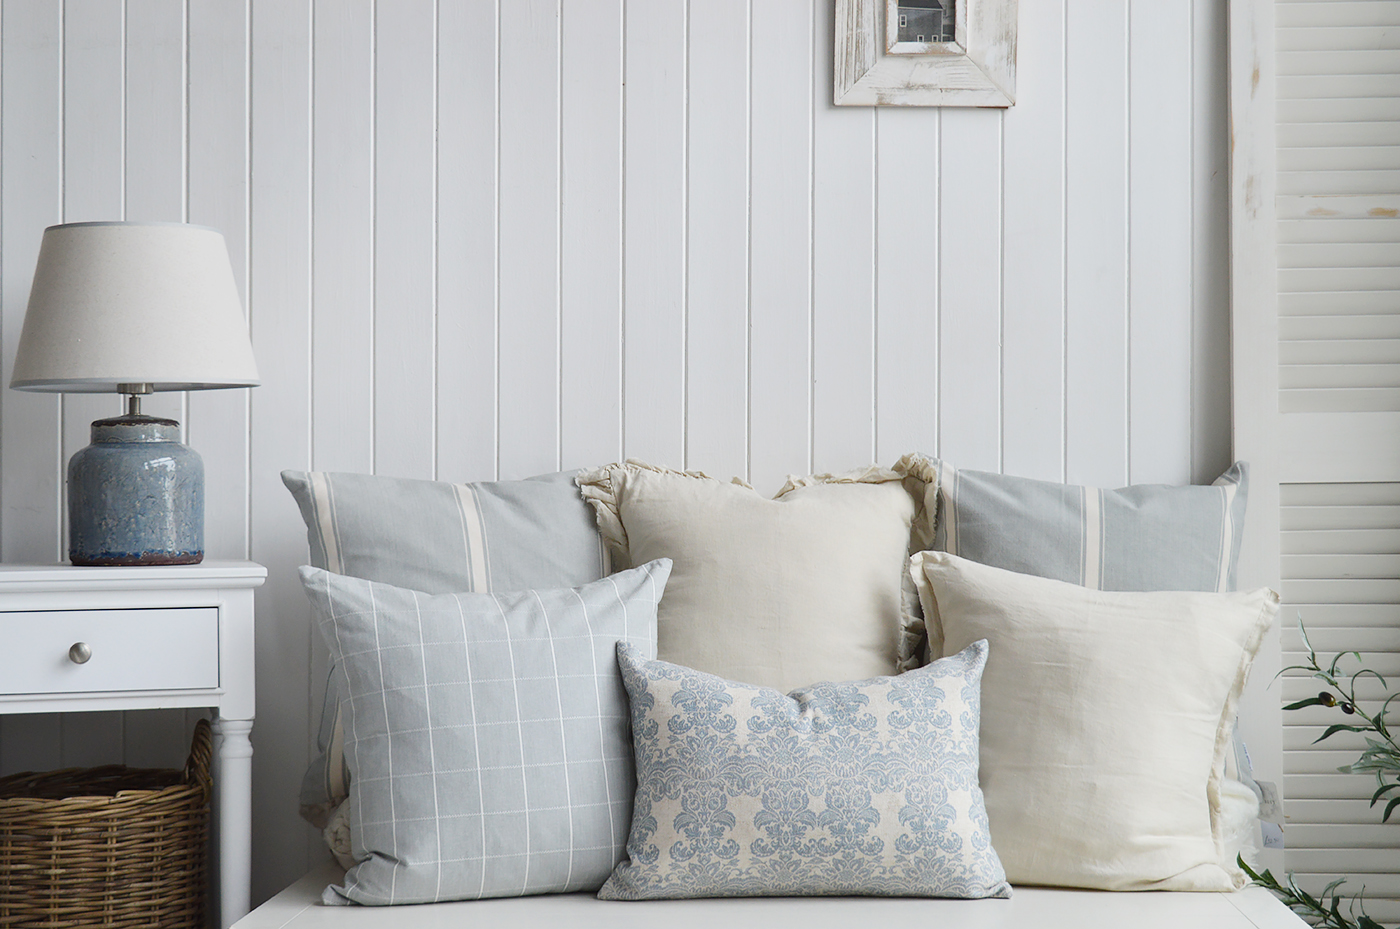 New England style coastal cushions for a Beach House home